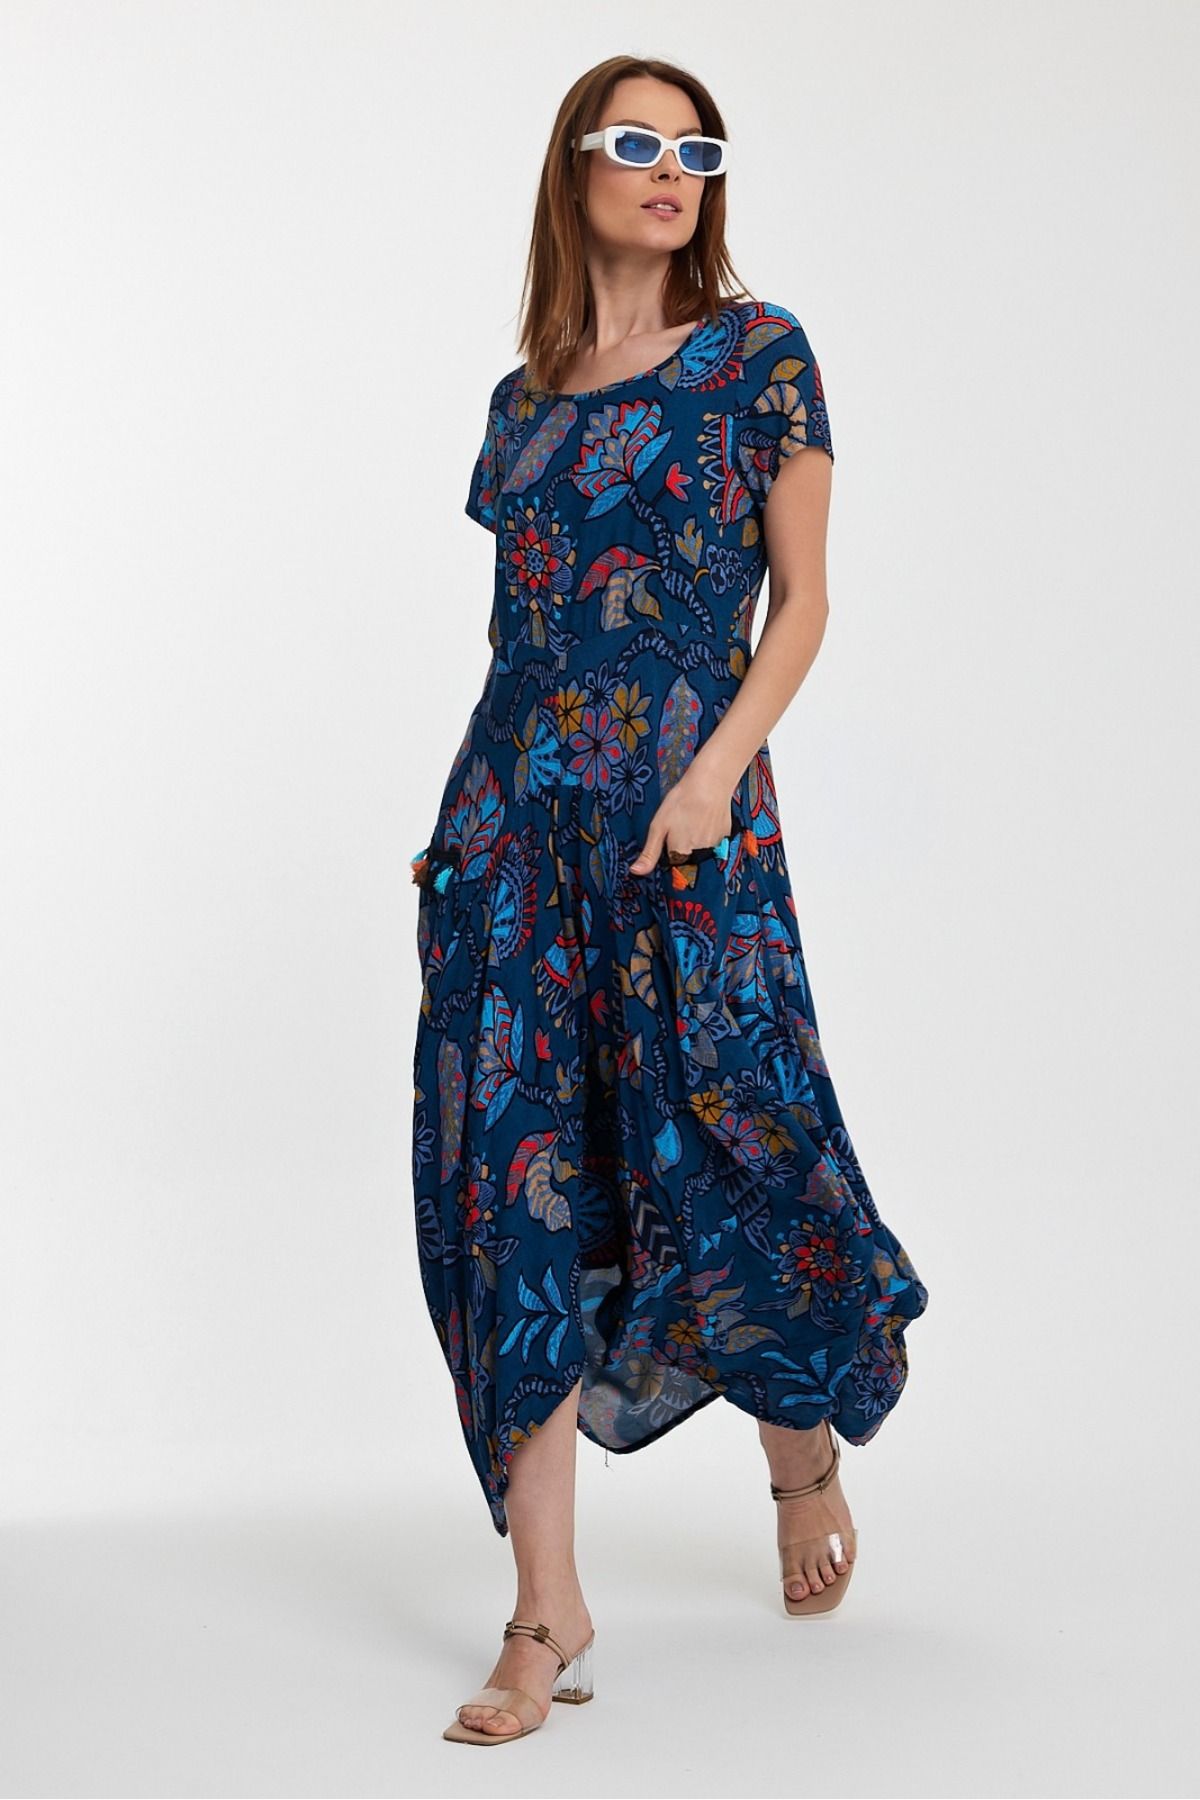 NUR TEKSTİL kadın  mavi desenli  %100 Pamuk viskon  kısa kol etnik-otantik şalvar elbise